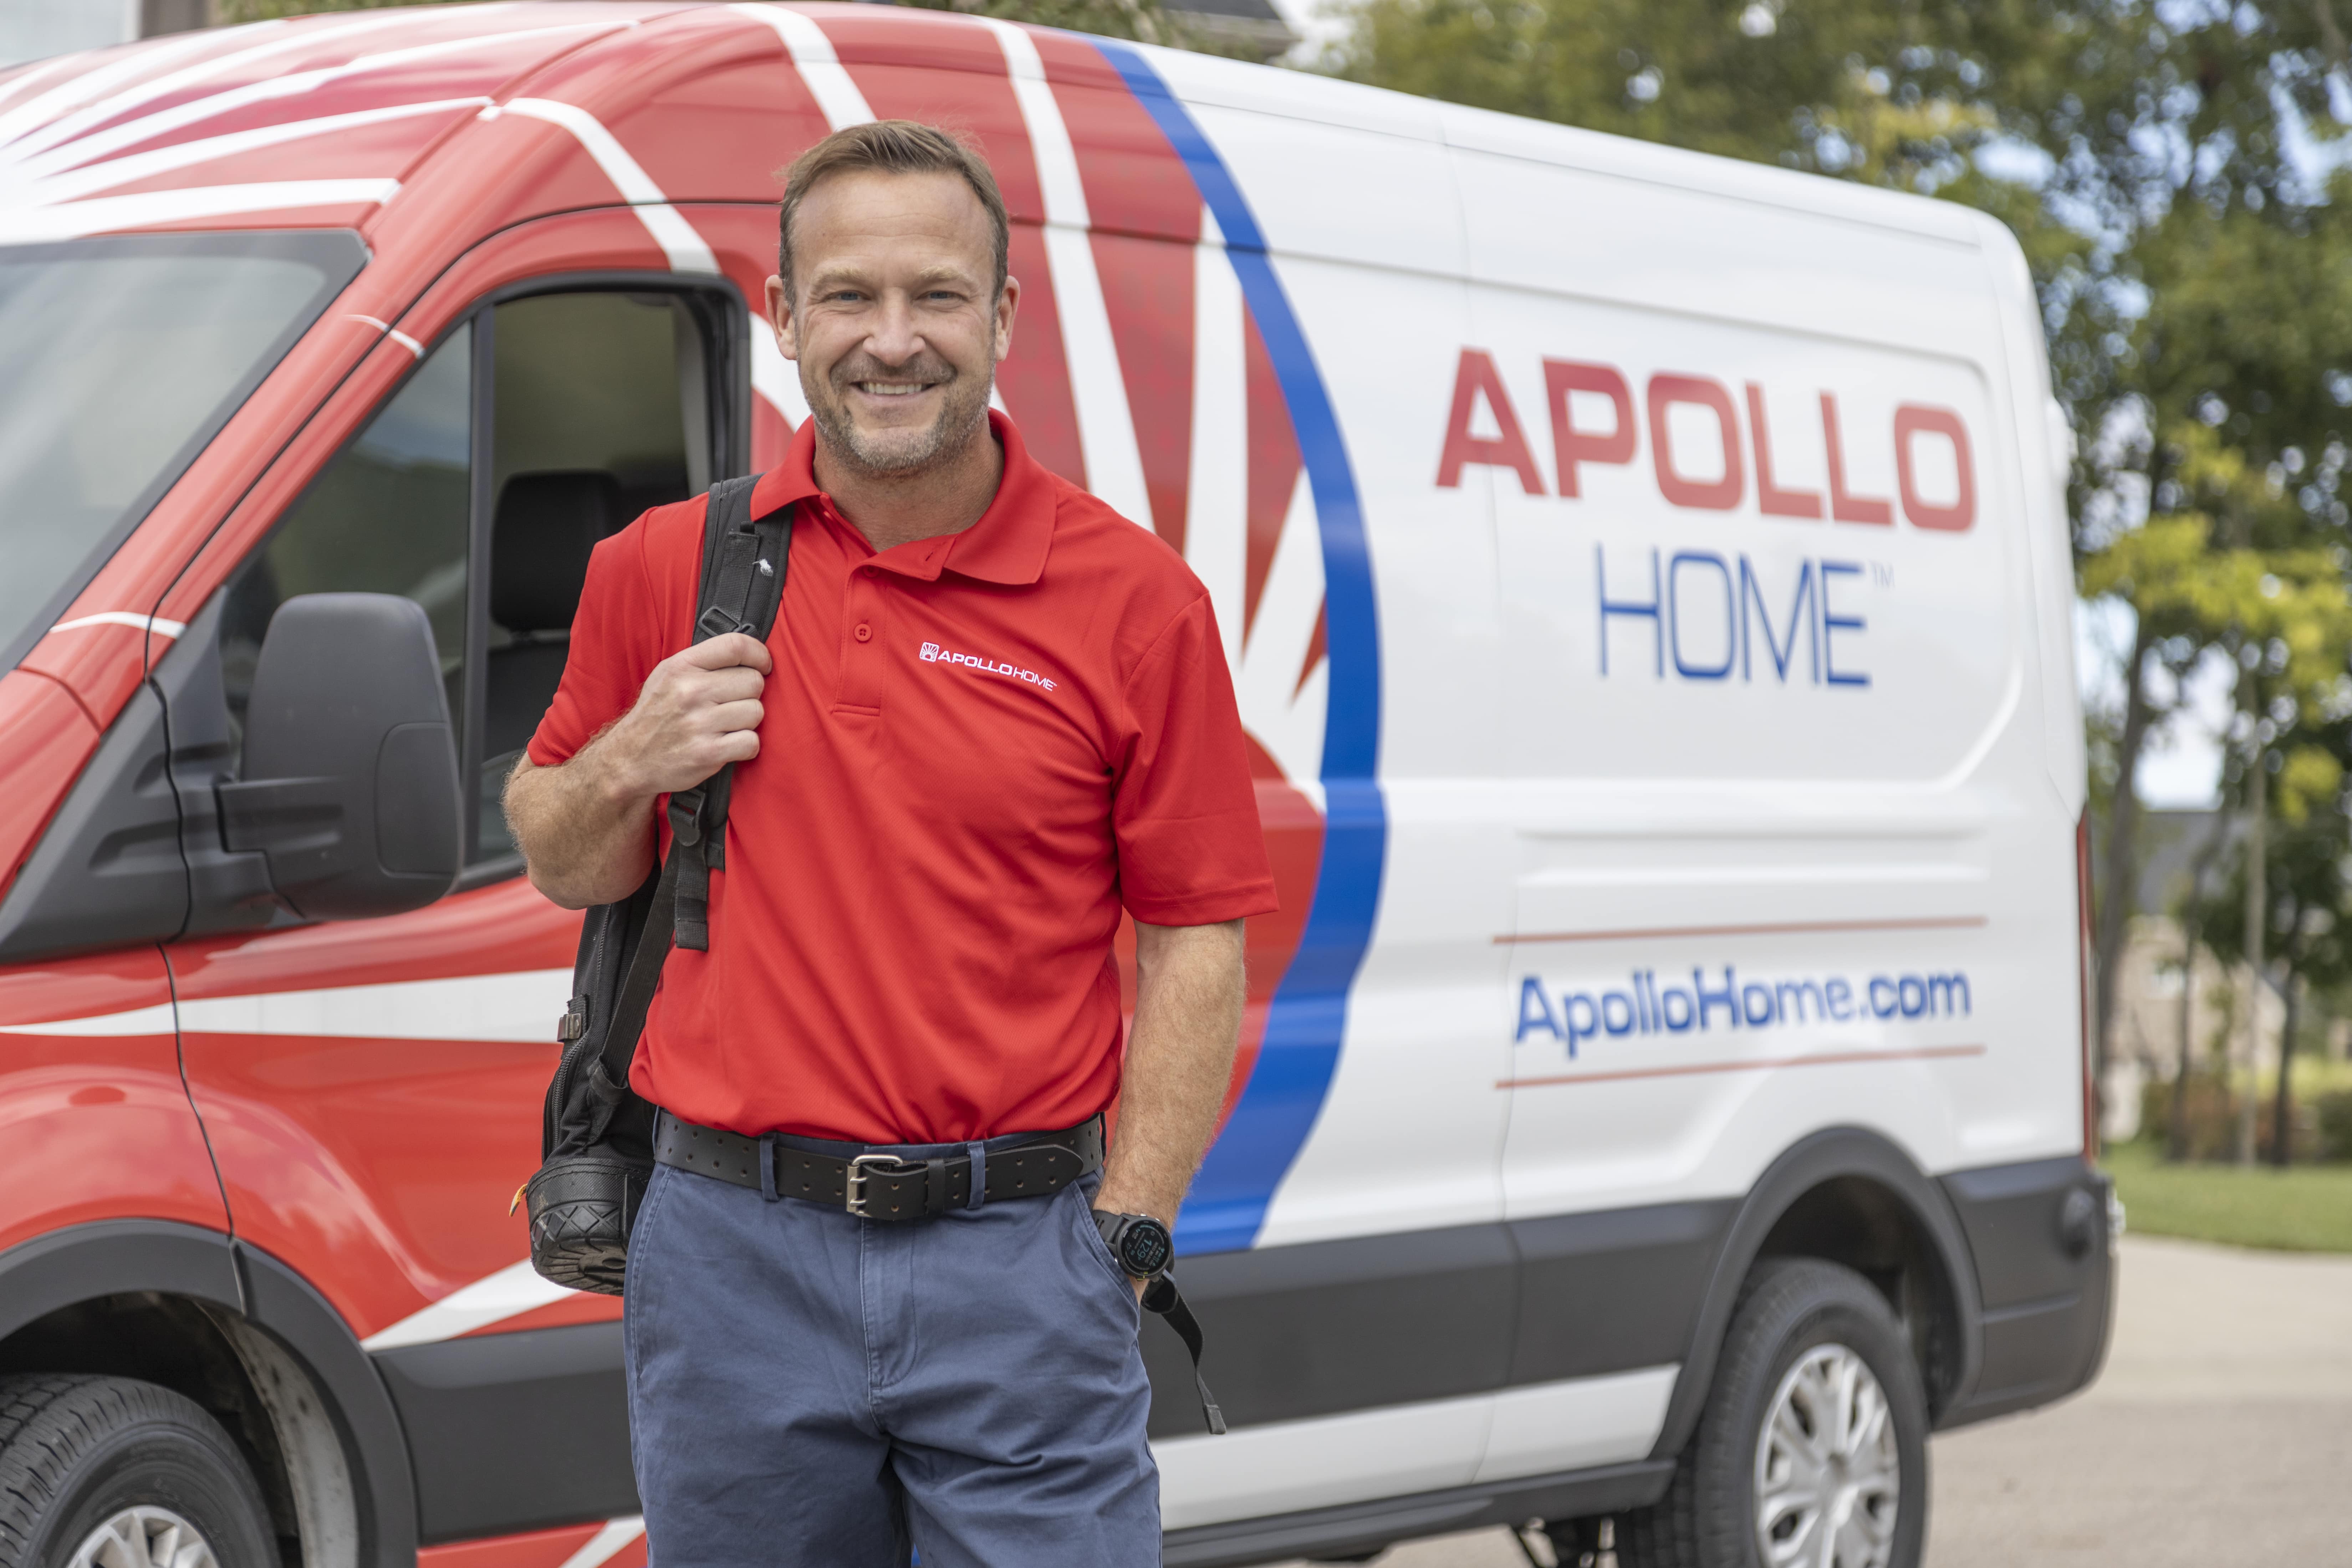 Happy Apollo Home Employee